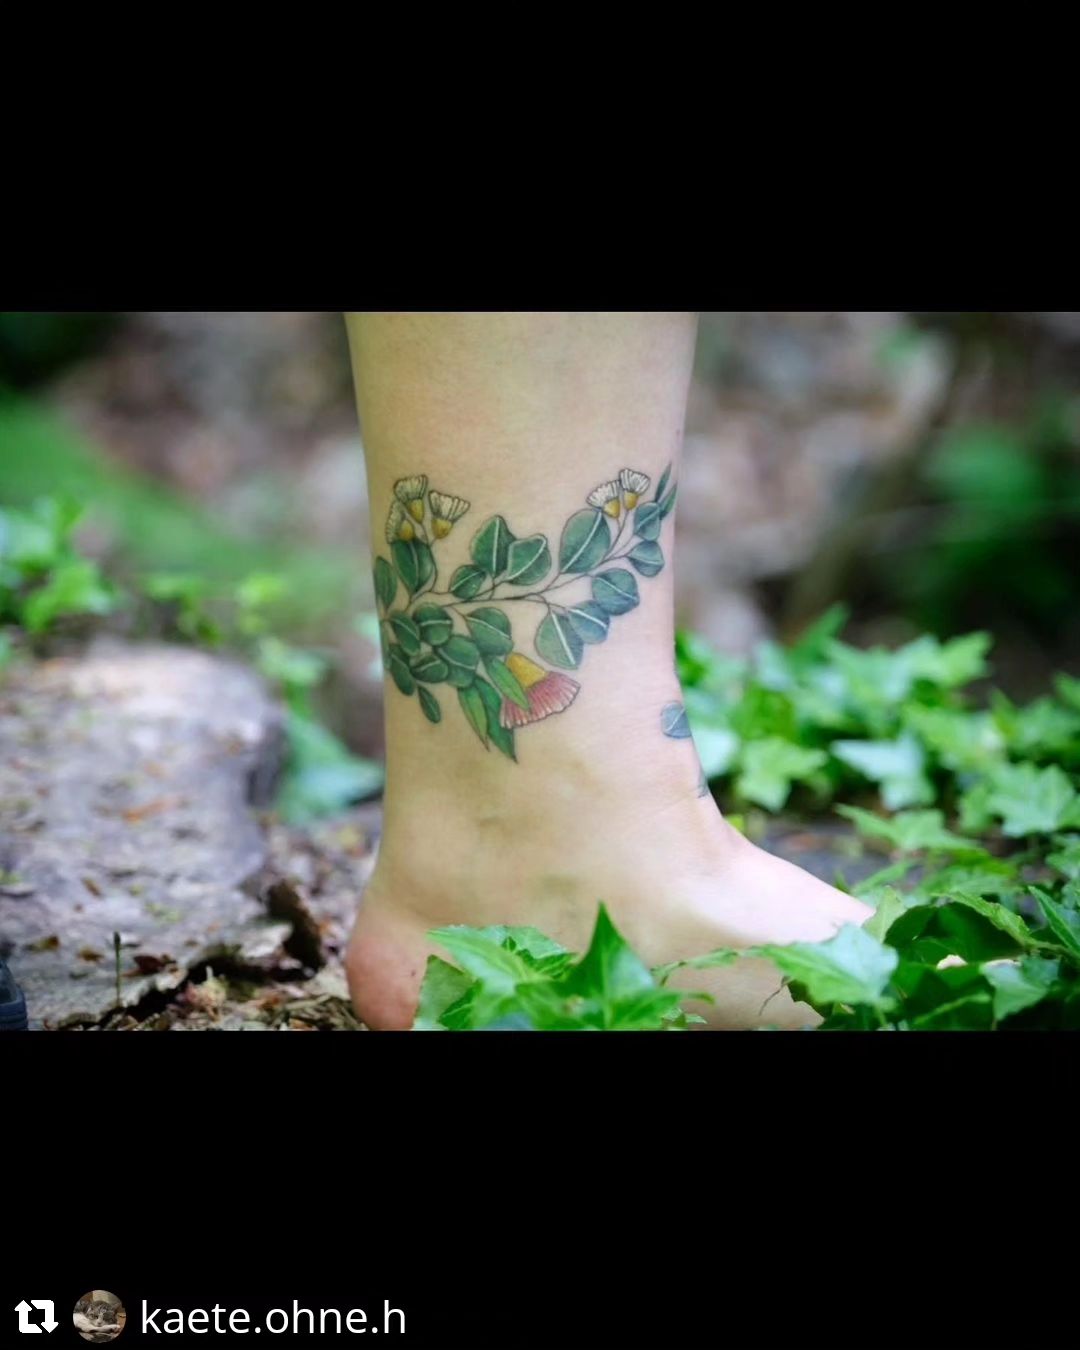 Verheiltes Fußbändchen von  @kaete.ohne.h
• • • • • •
Kleines, verheiltes Fußban